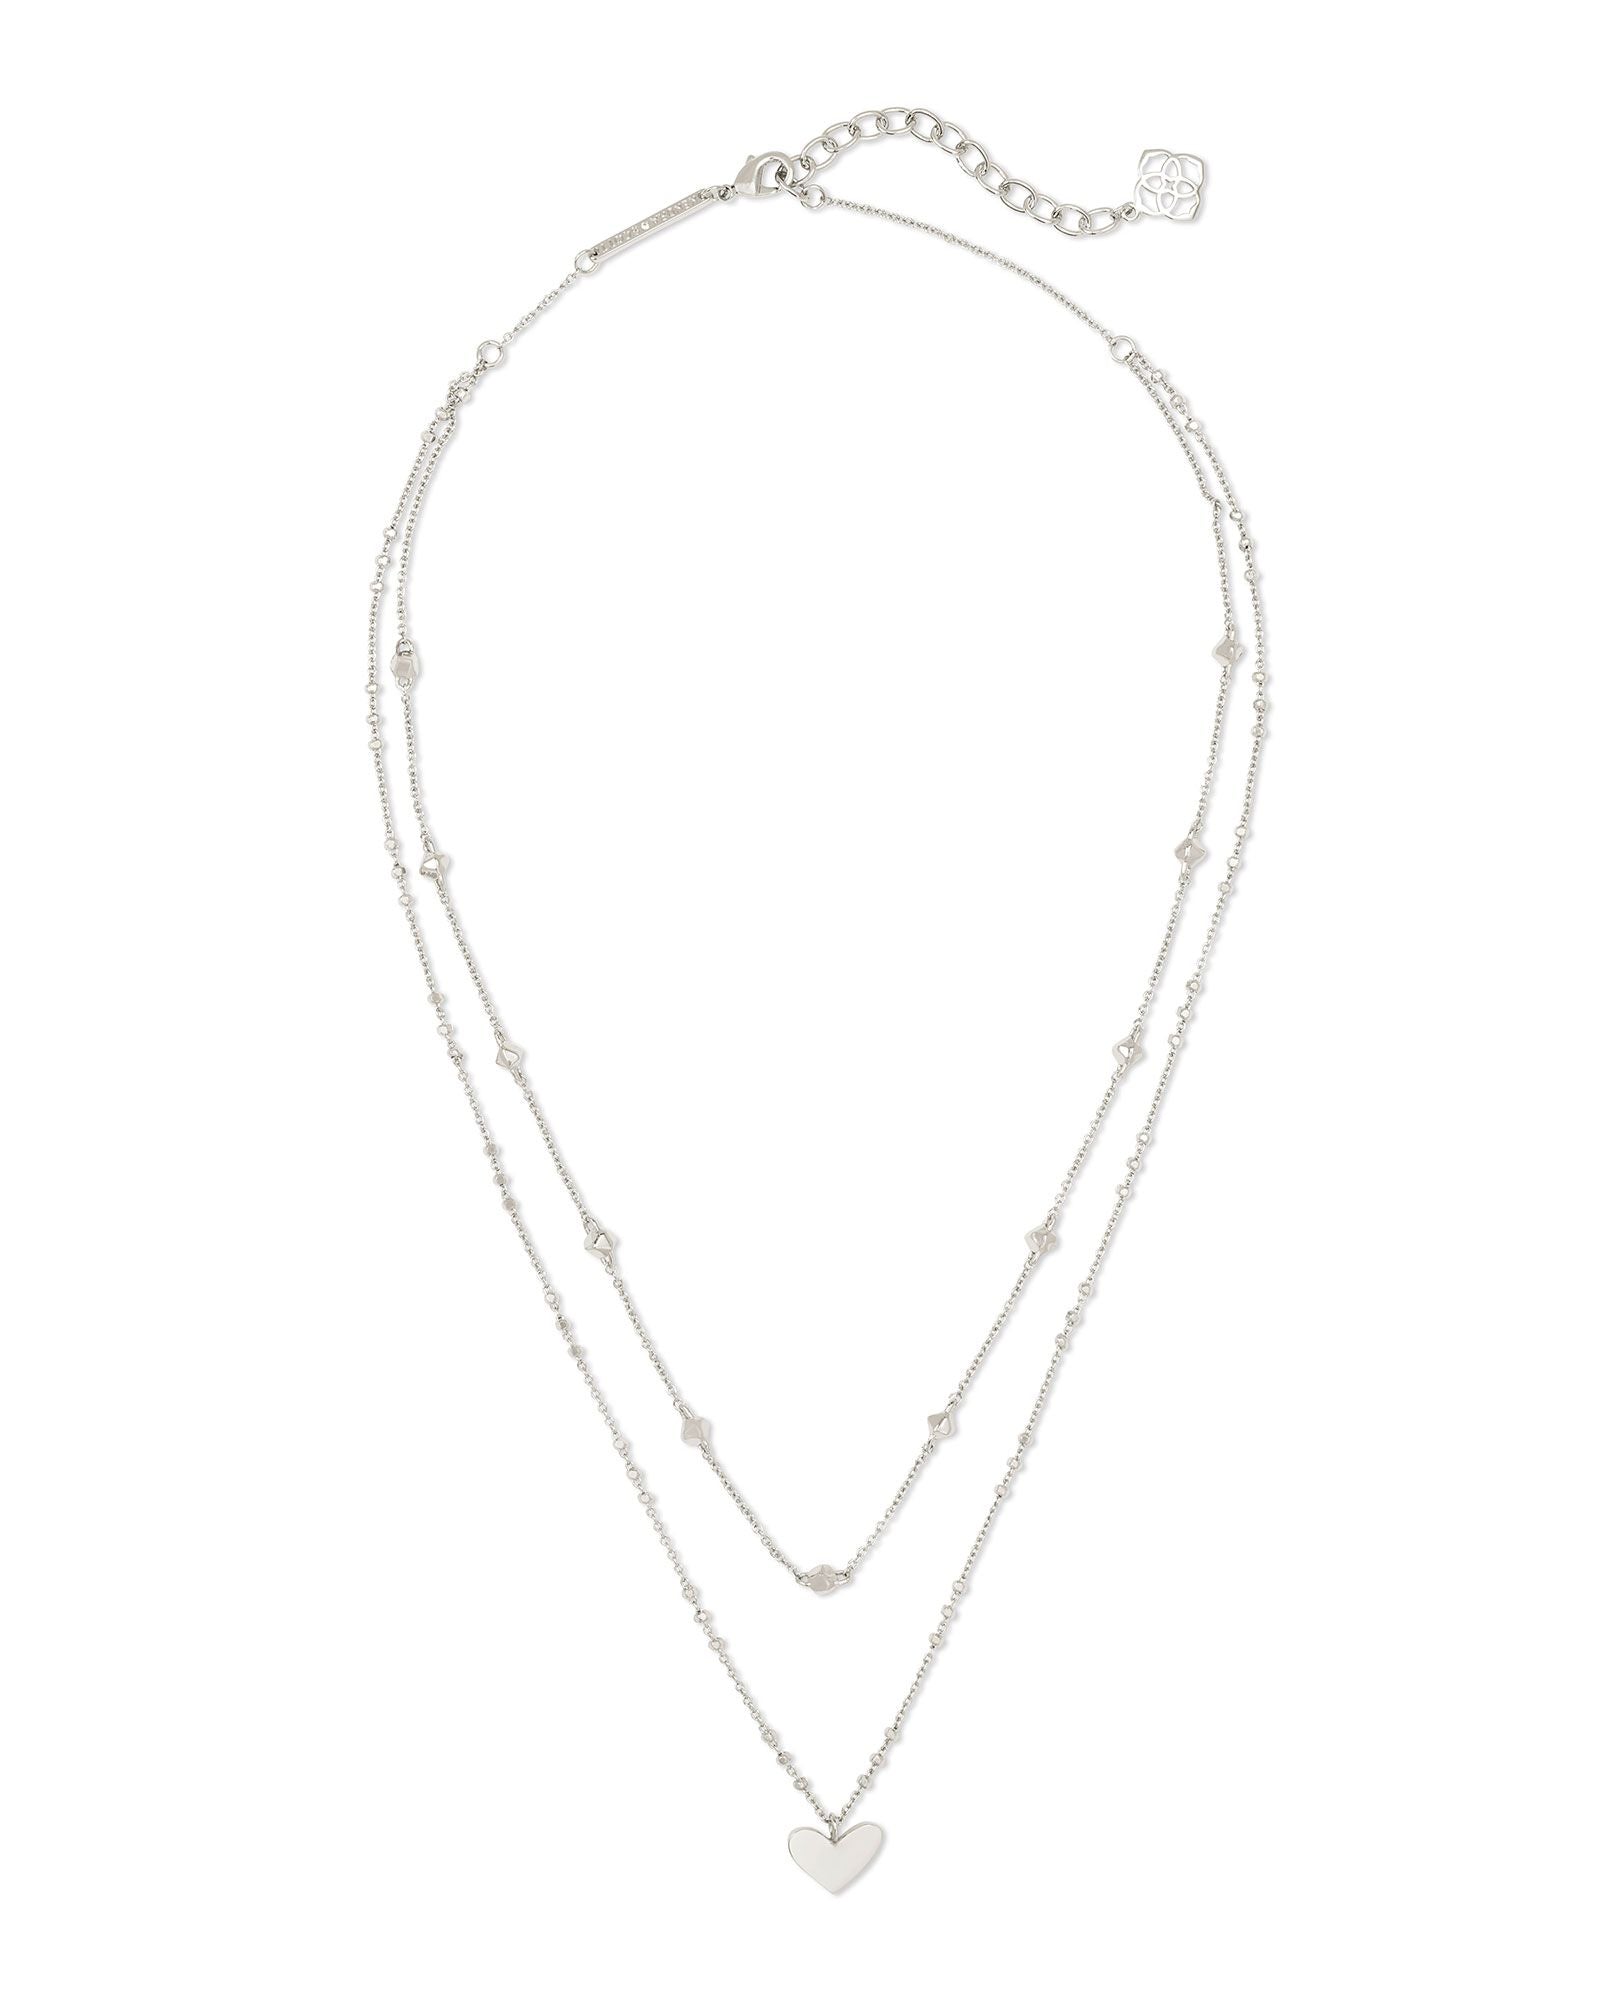 Ari Heart Multi Strand Necklace - more colors